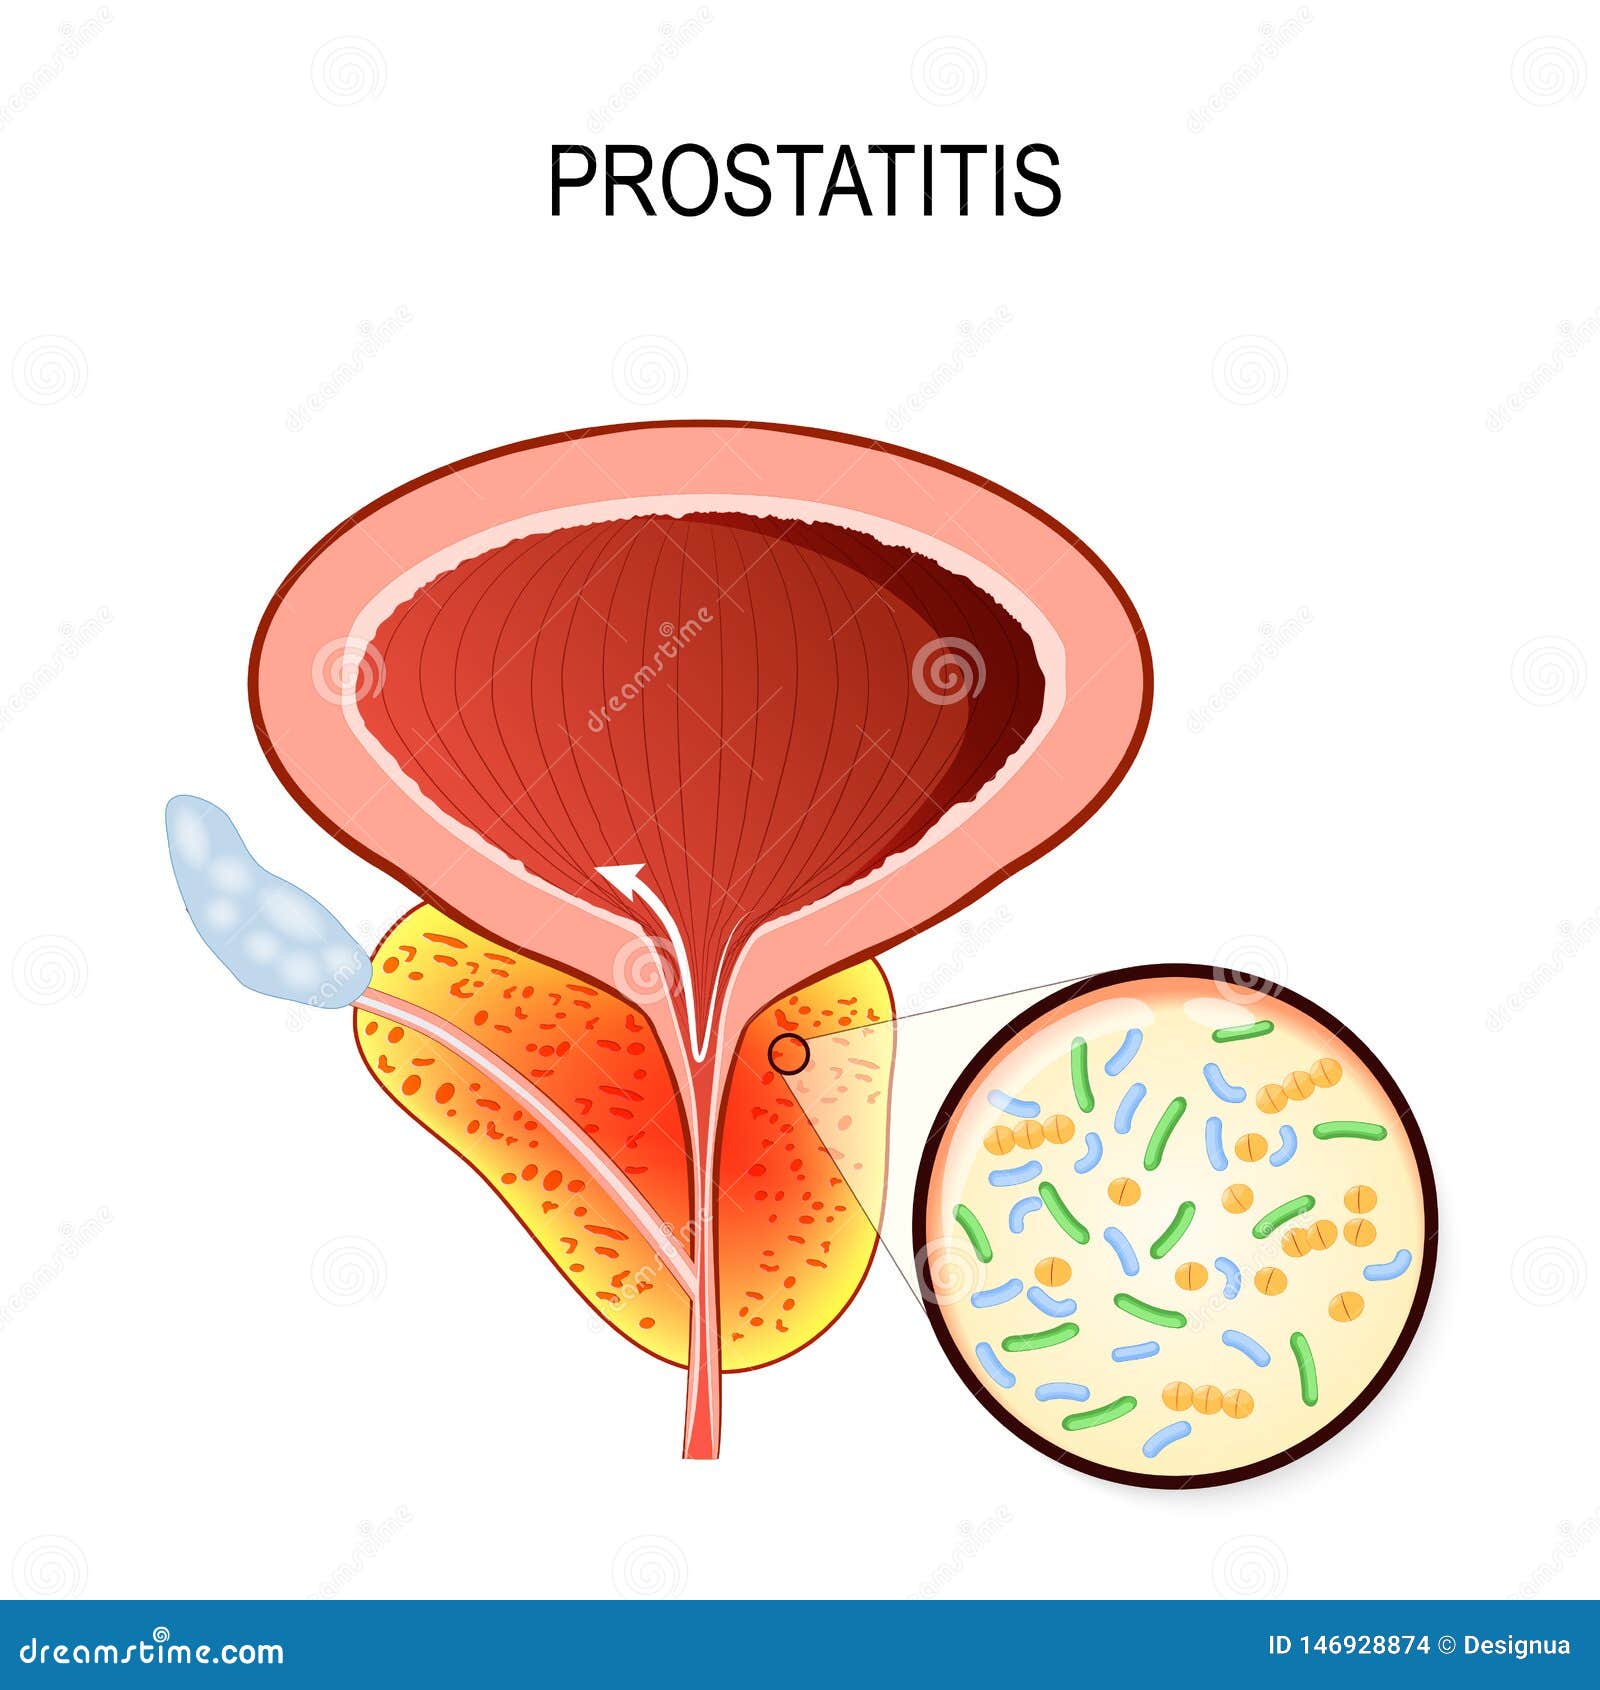 Sfatul Farmacistului: Prostatita cronica bacteriana (enterococ)